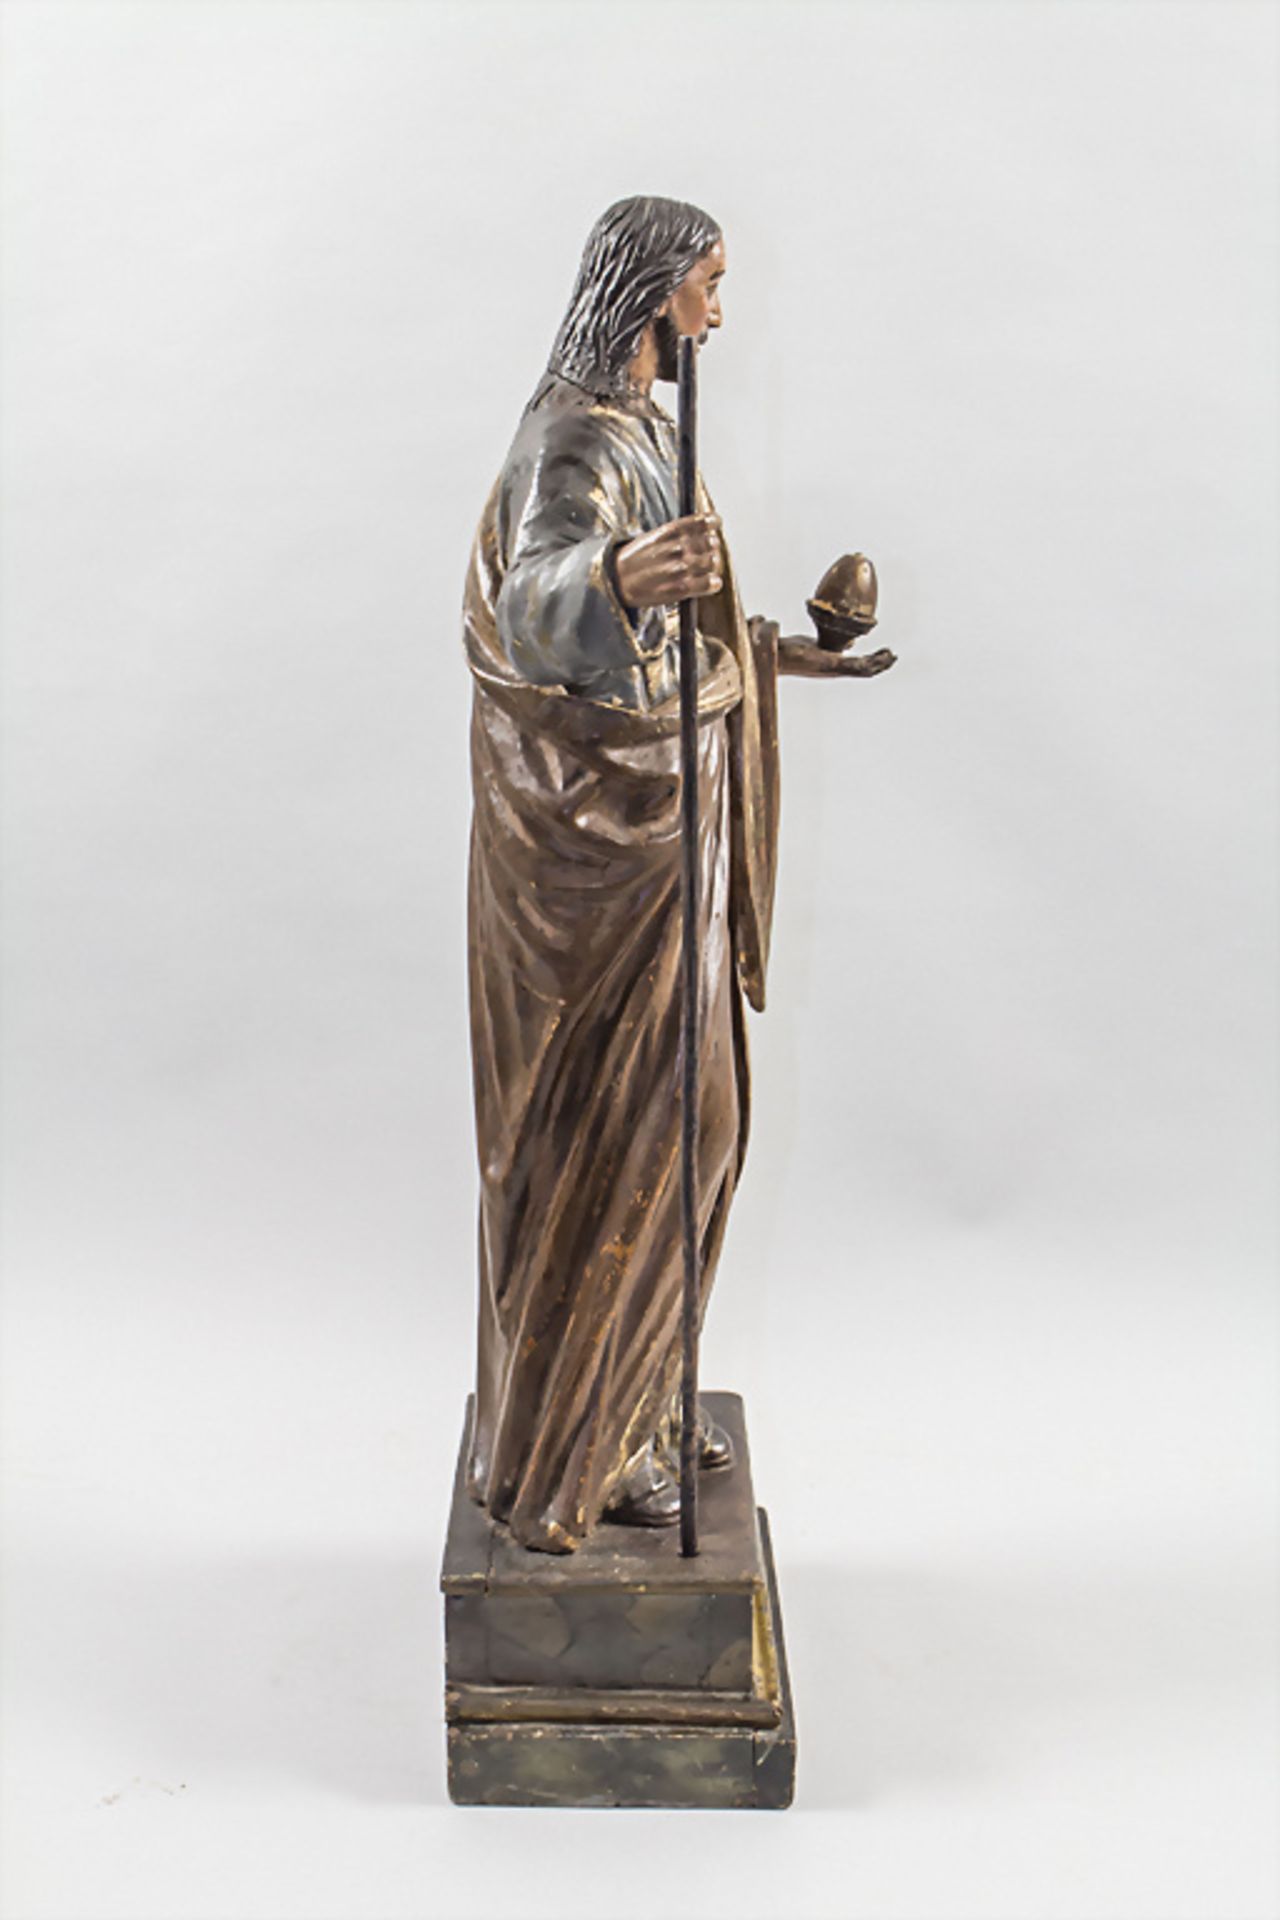 Holzskulptur 'Jesus' / A wooden sculpture depicting Jesus, Italien, 18./19. Jh. - Image 4 of 7